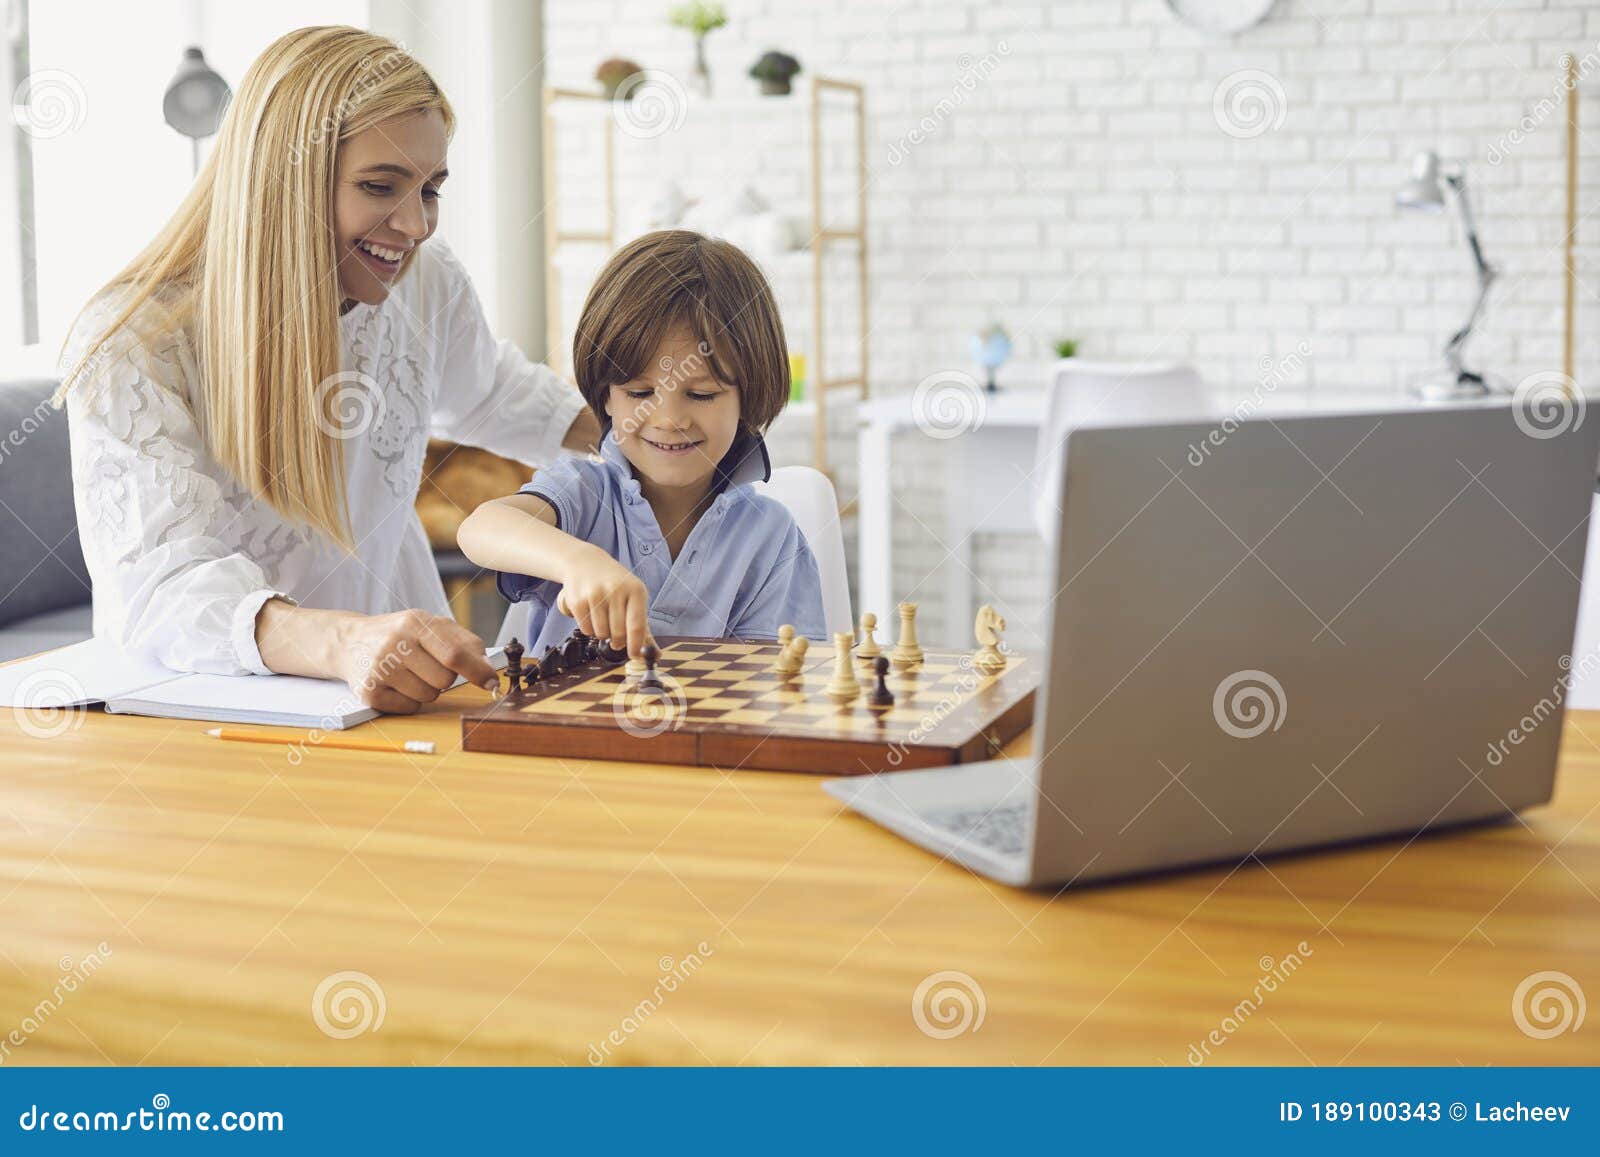 Jogue xadrez online com laptop. aprender a jogar xadrez pela